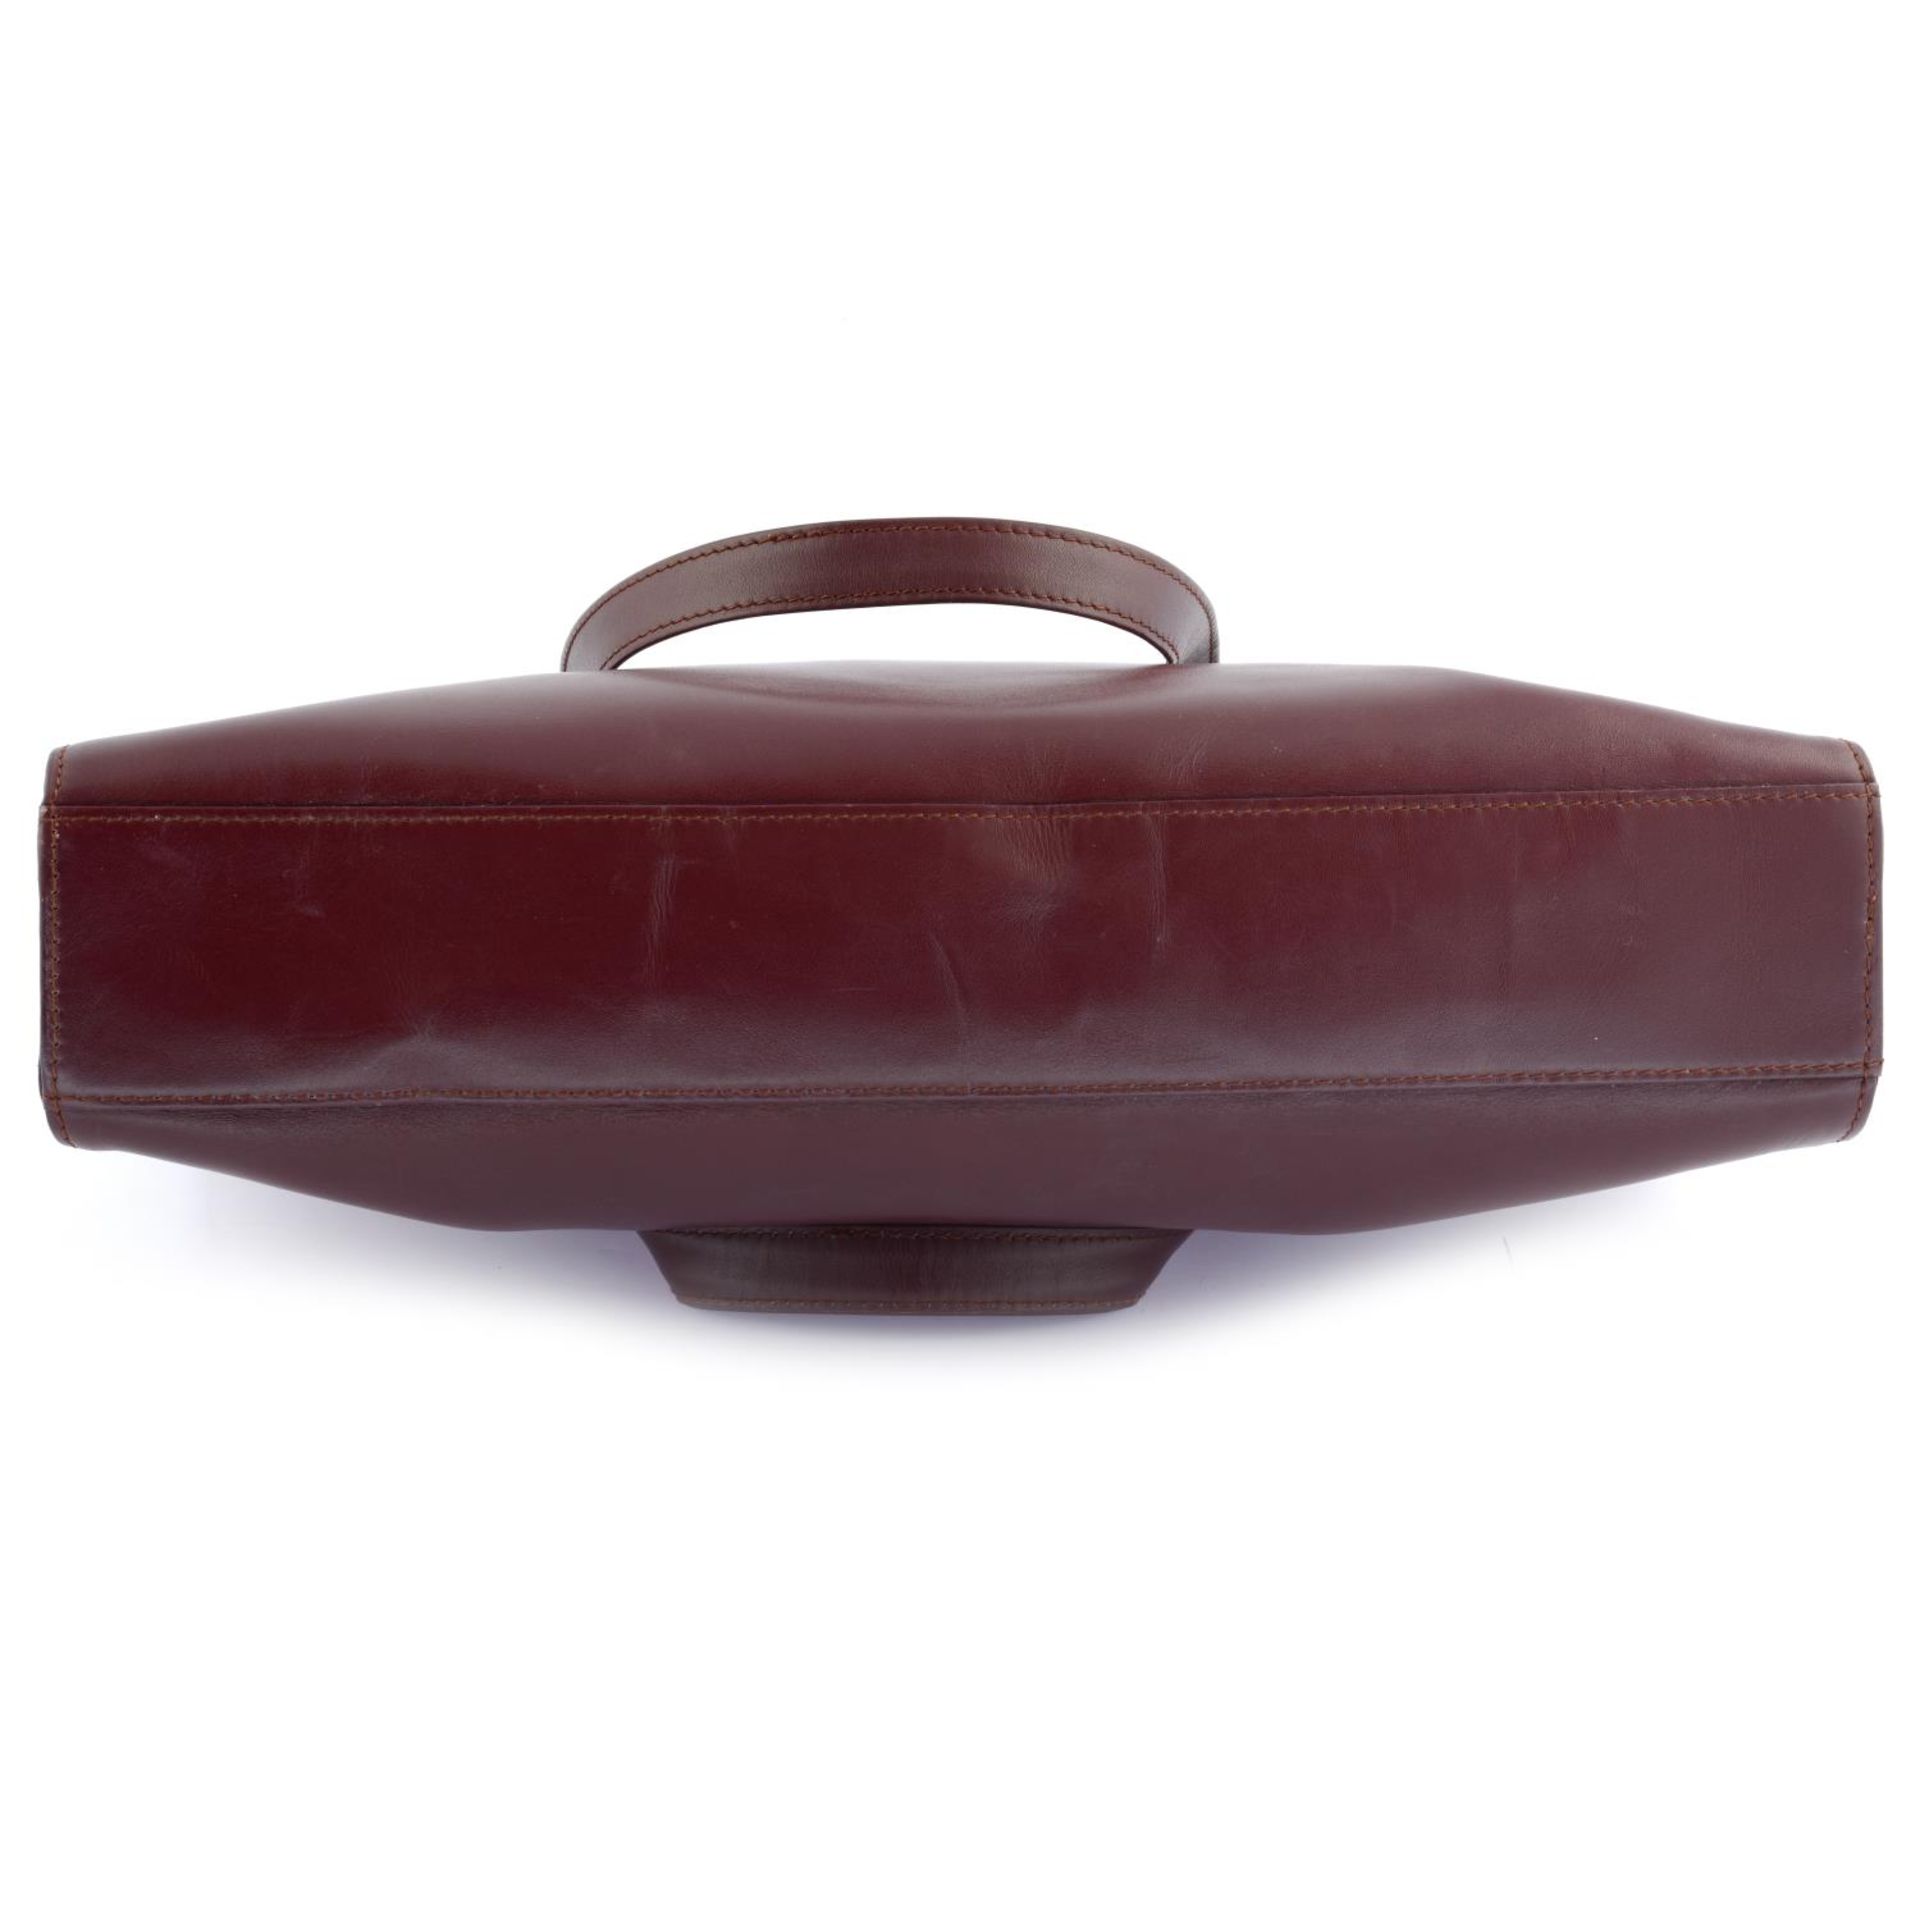 CARTIER - a burgundy leather Vintage Shopper handbag. - Image 4 of 4